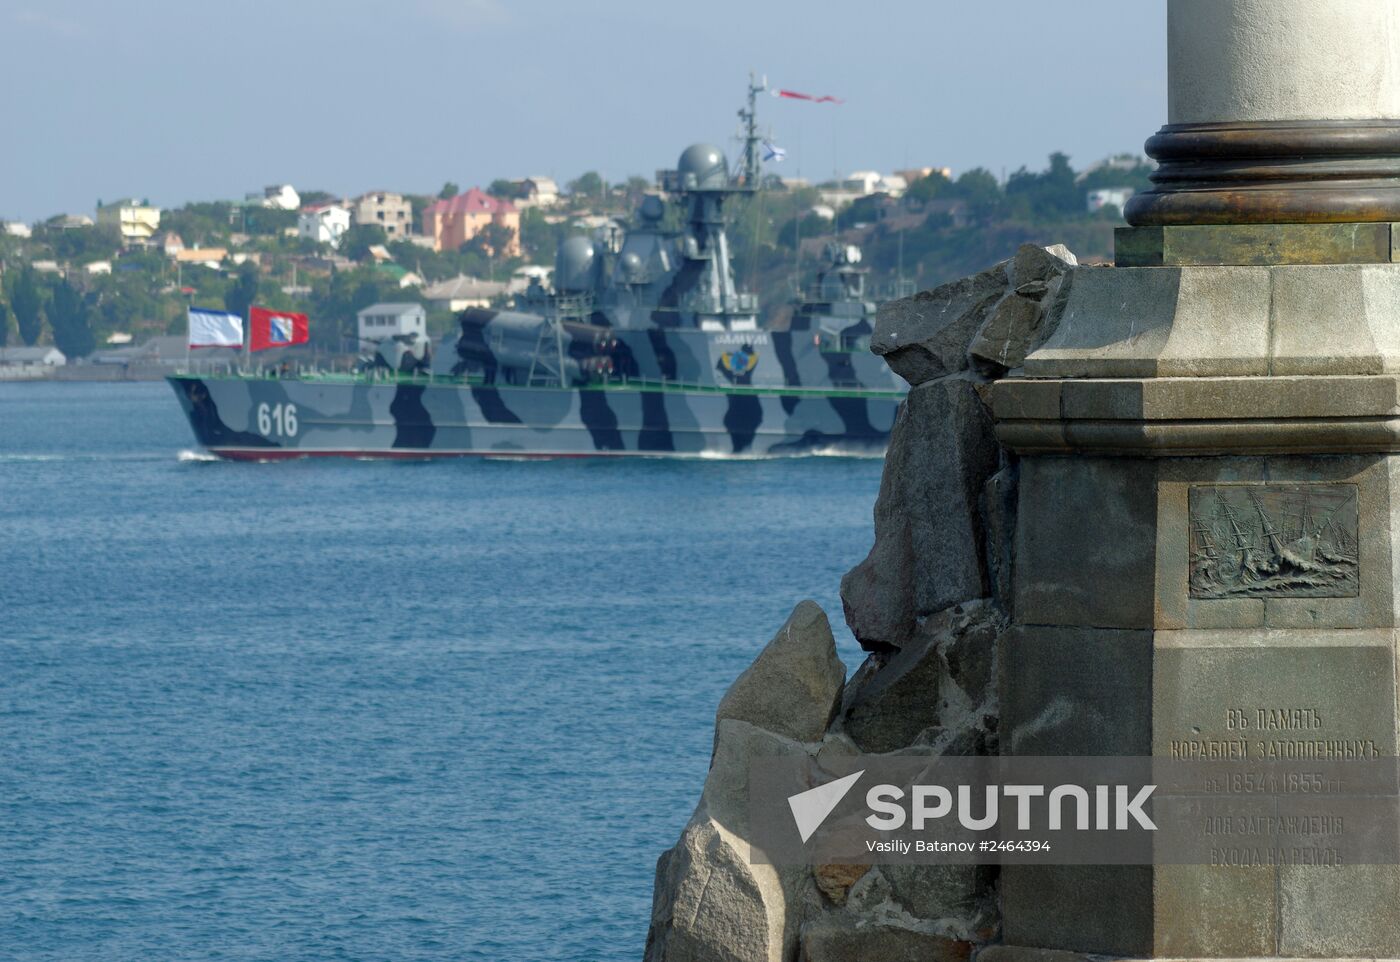 Rehearsing for Navy Day parade in Sevastopol